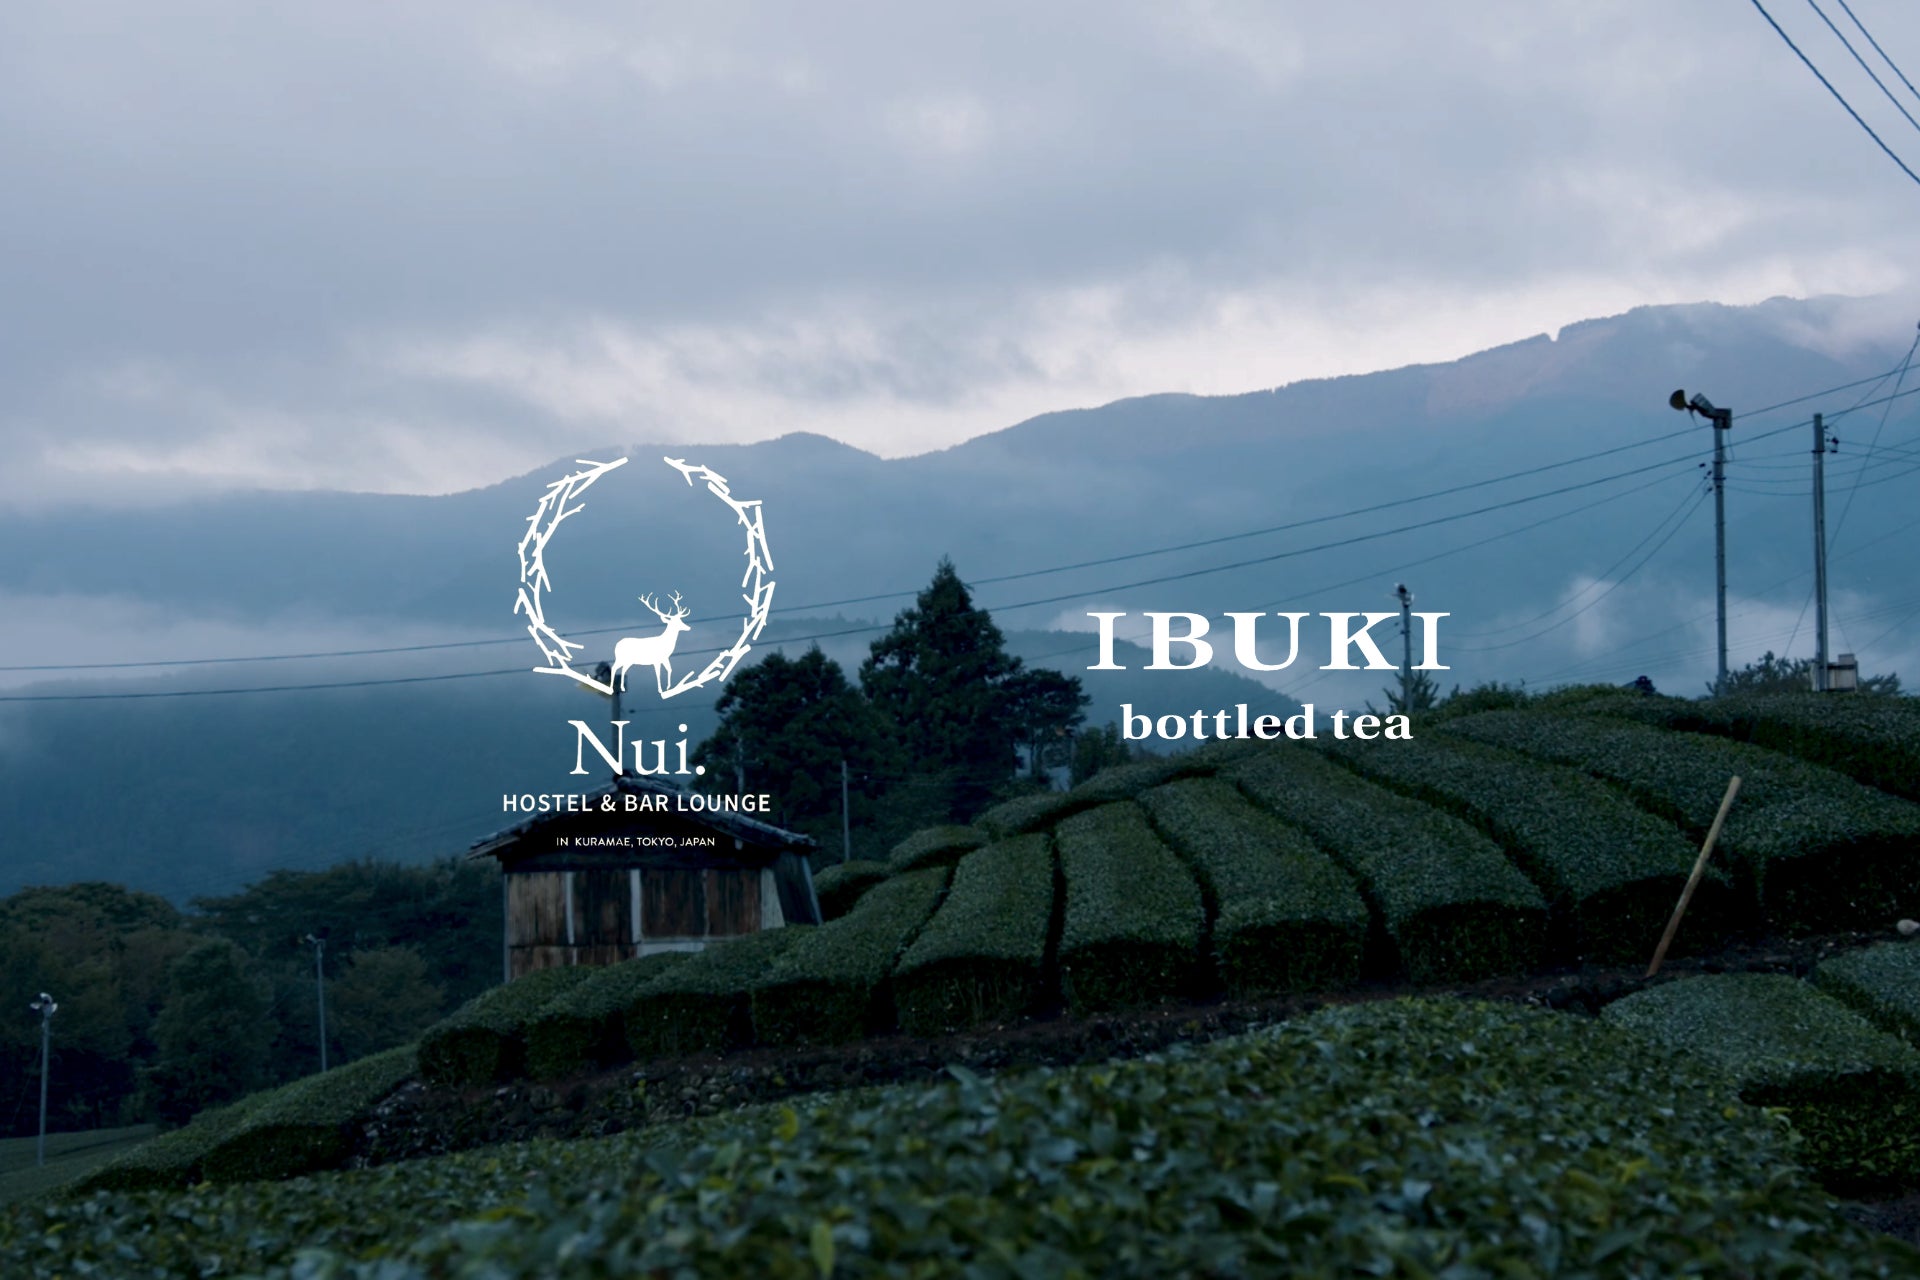 ボトリングティーブランド『IBUKI bottled tea』が初のタイアップイベントを実施。東京蔵前にある「Nui. HOSTEL & BAR LOUNGE」で未体験の日本茶の世界を堪能。のサブ画像1